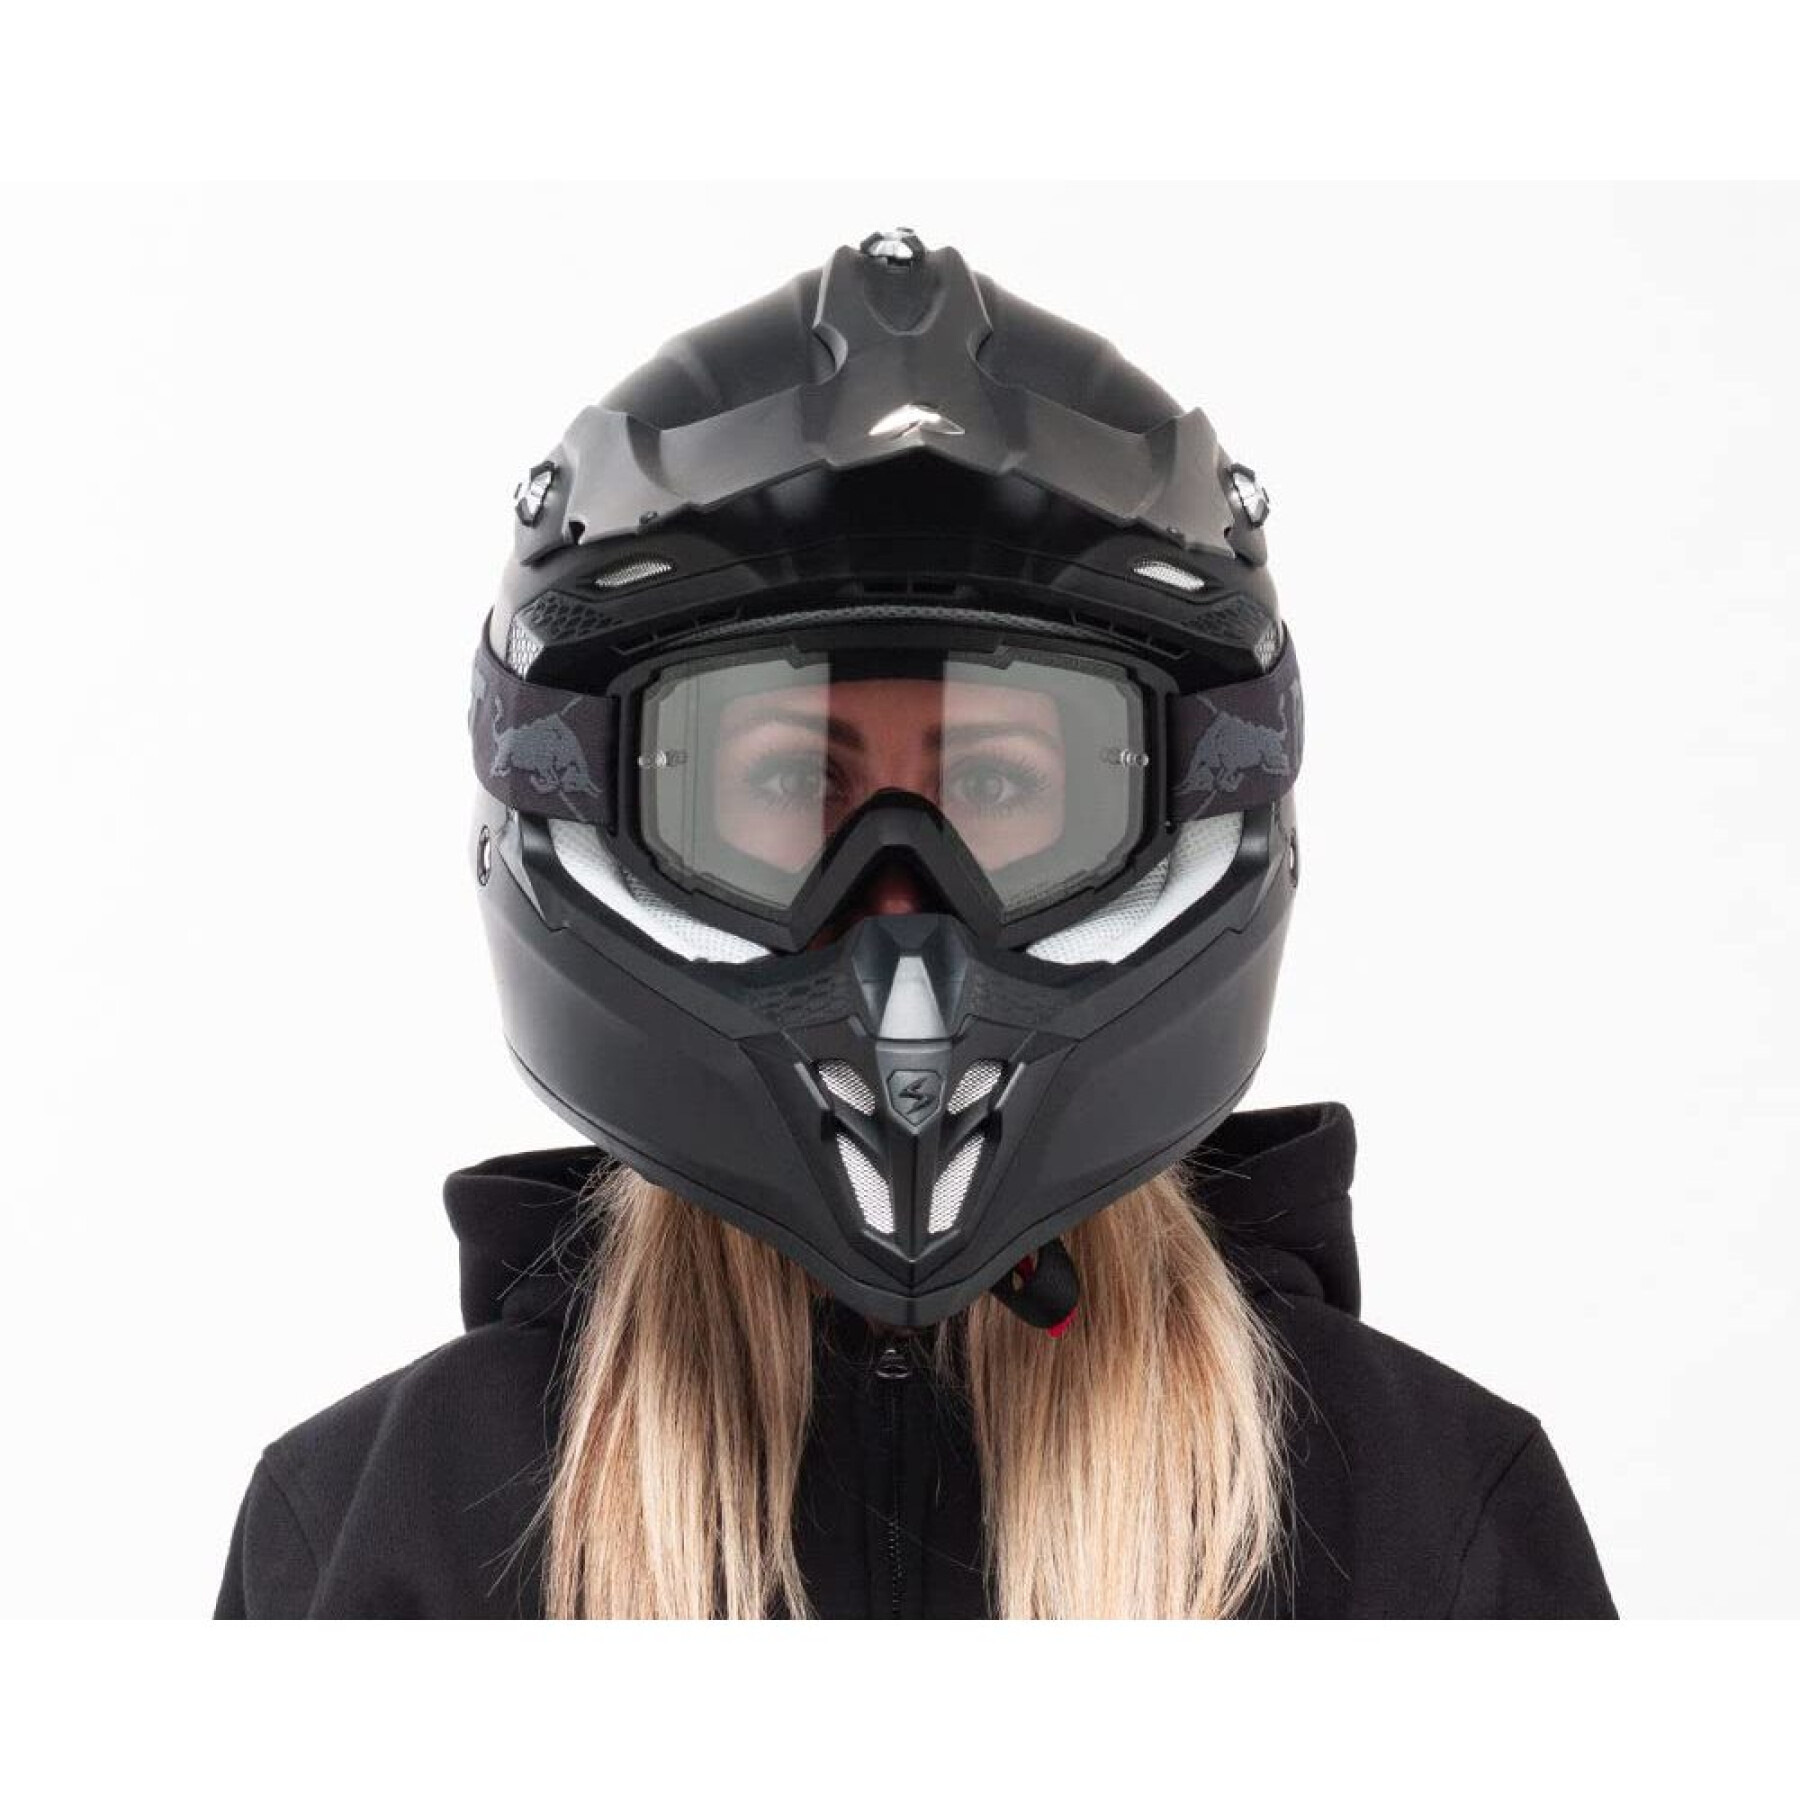 Máscara de moto cruzada Redbull Spect Eyewear Whip-002